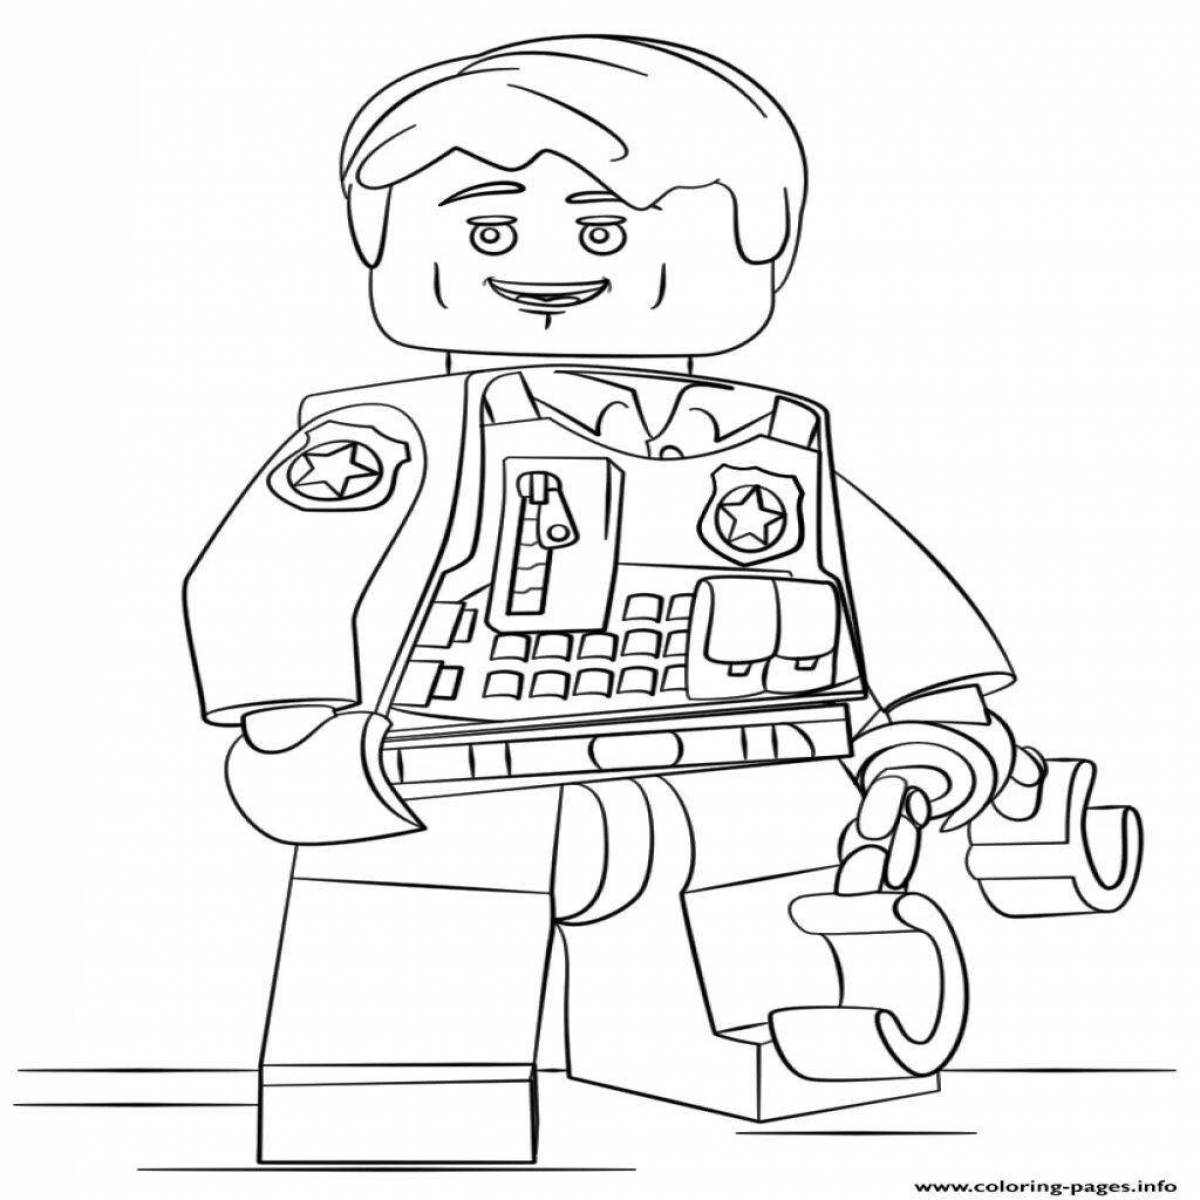 Развлекательная раскраска игрушечных солдатиков lego